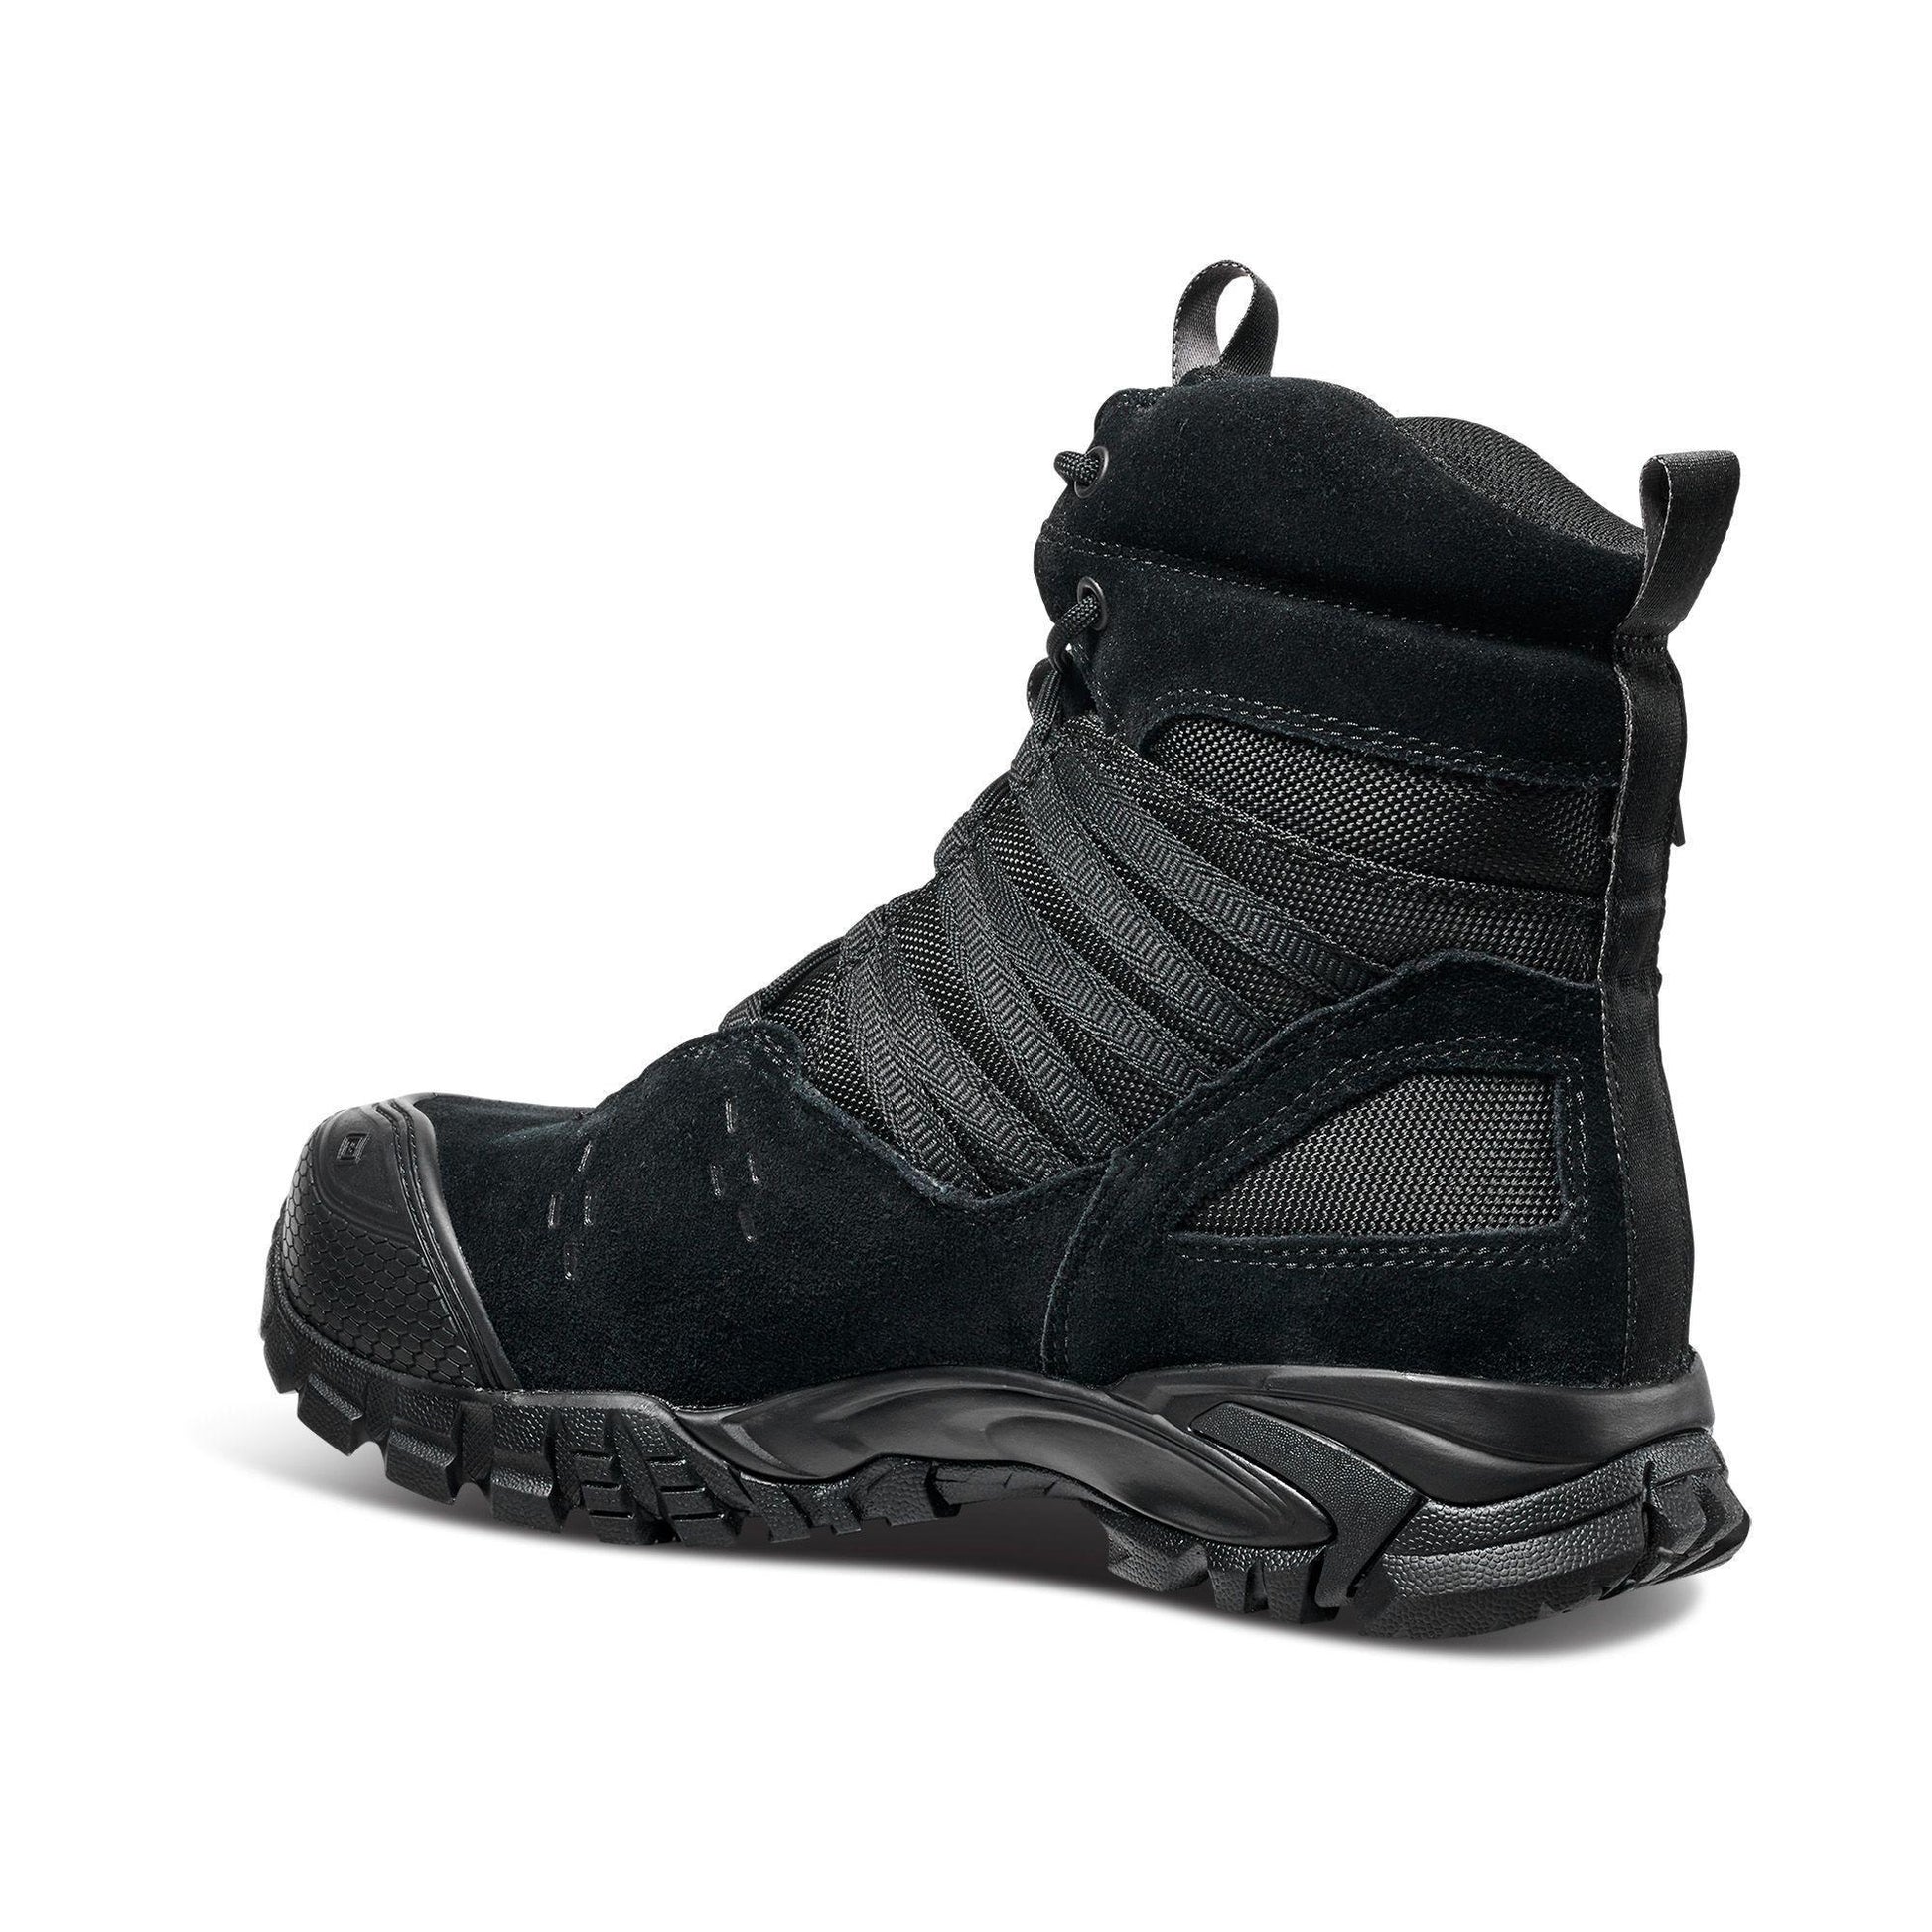 5.11 Union Waterproof 6" Boot - Black (Kängor) från 5.11 Tactical. | TacNGear - Utrustning för polis och militär och outdoor.